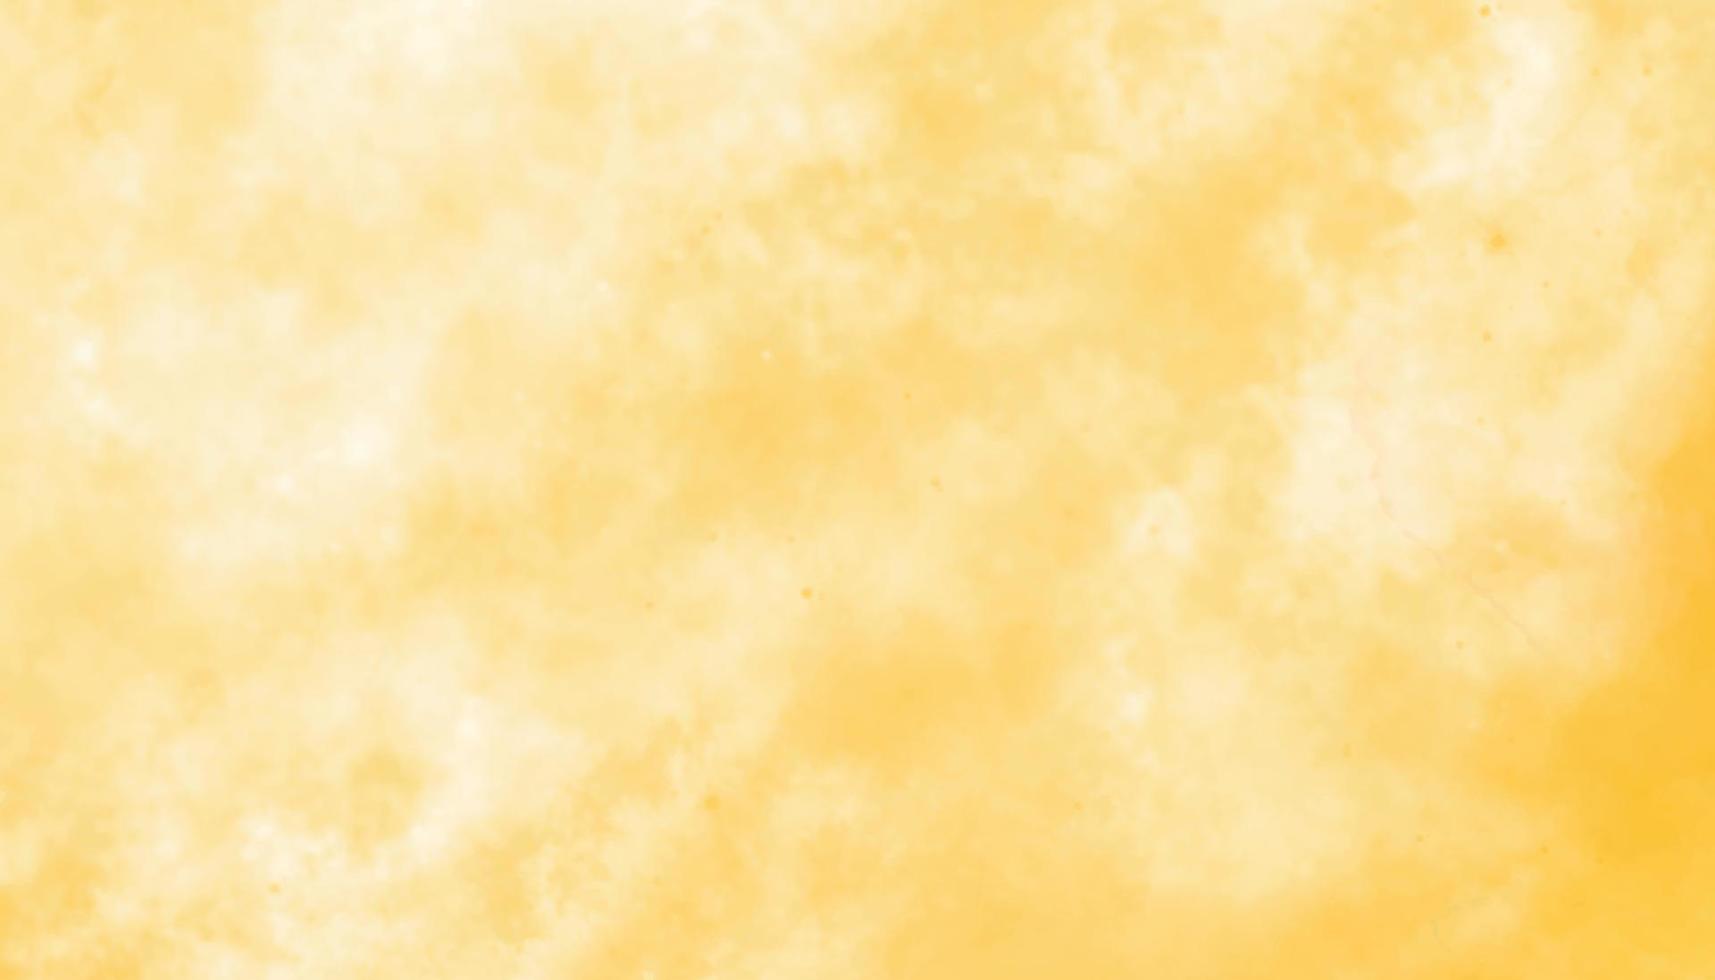 abstrakt mjuk gul vattenfärg bakgrund. kreativ gul moln och vit nyanser hand dragen textur. vattenfärg papper texturerad akvarell duk för modern kreativ design. tvätta aqua vektor